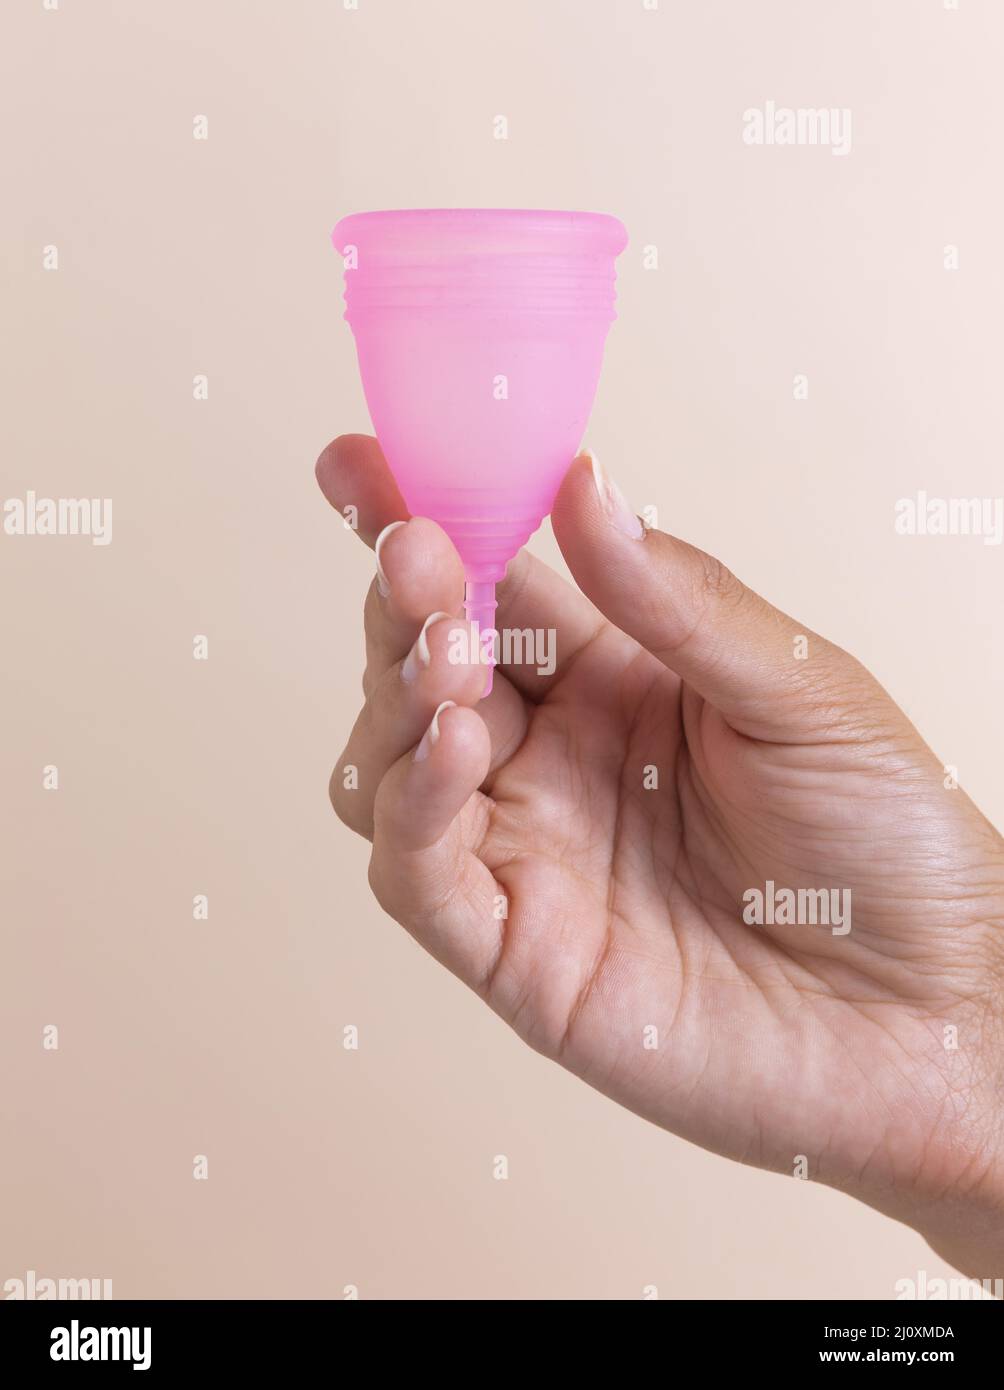 Mano de cerca sosteniendo la taza menstrual rosa. Fotografías de alta calidad Foto de stock